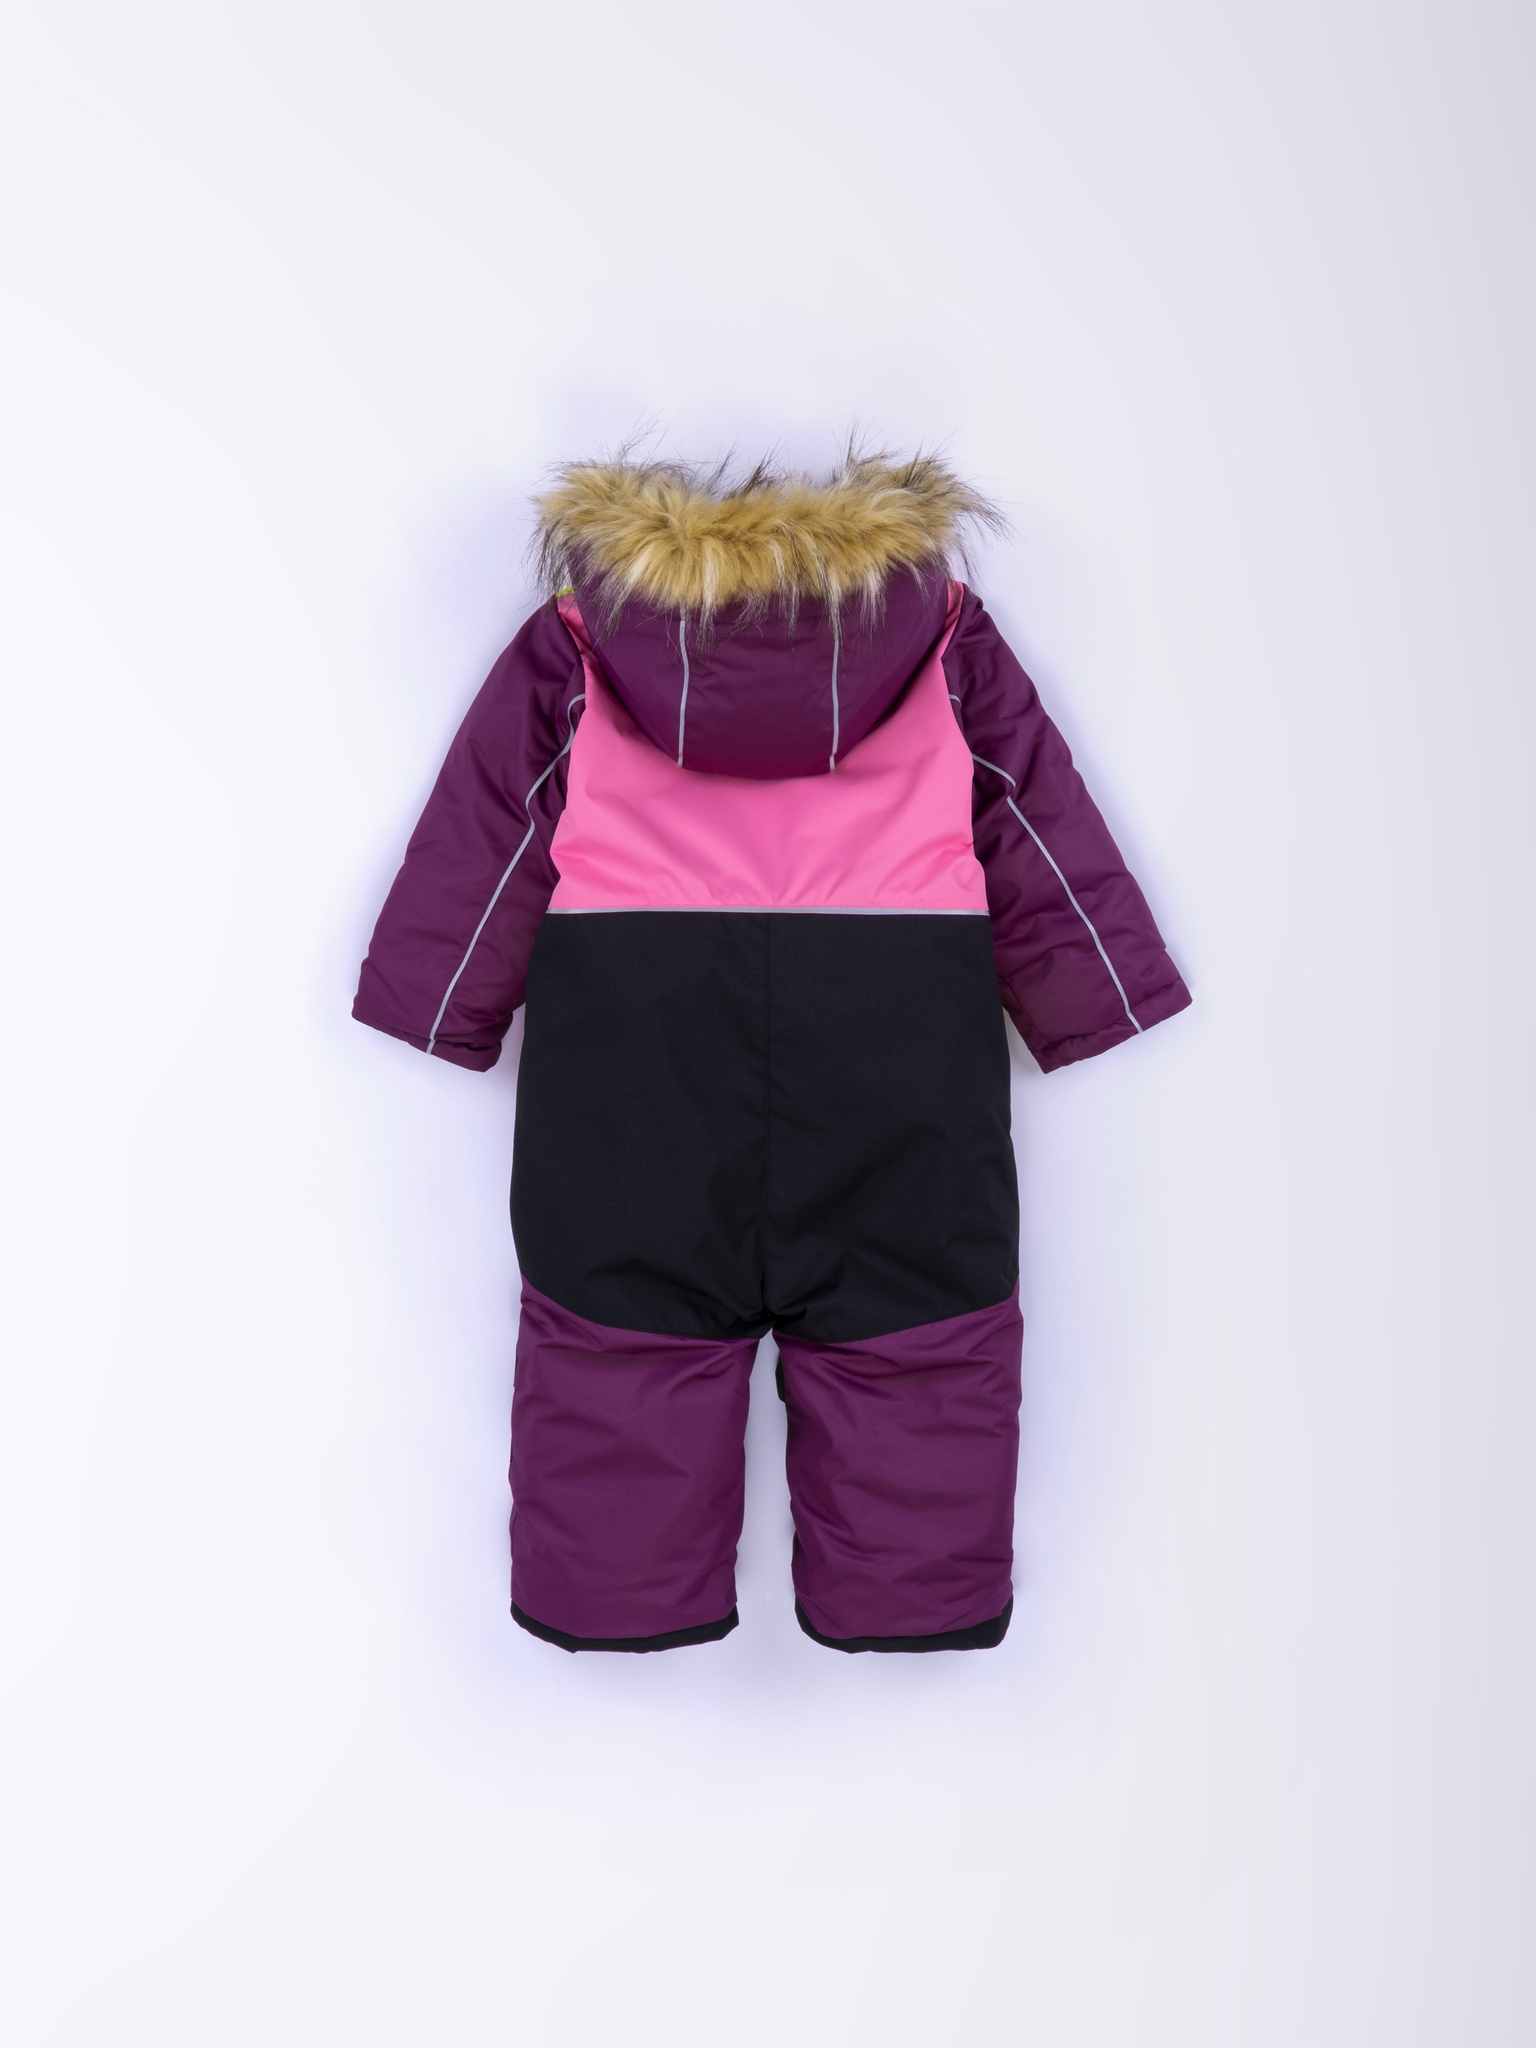 Как одеть ребенка зимой или принцип многослойности в детской одежде.